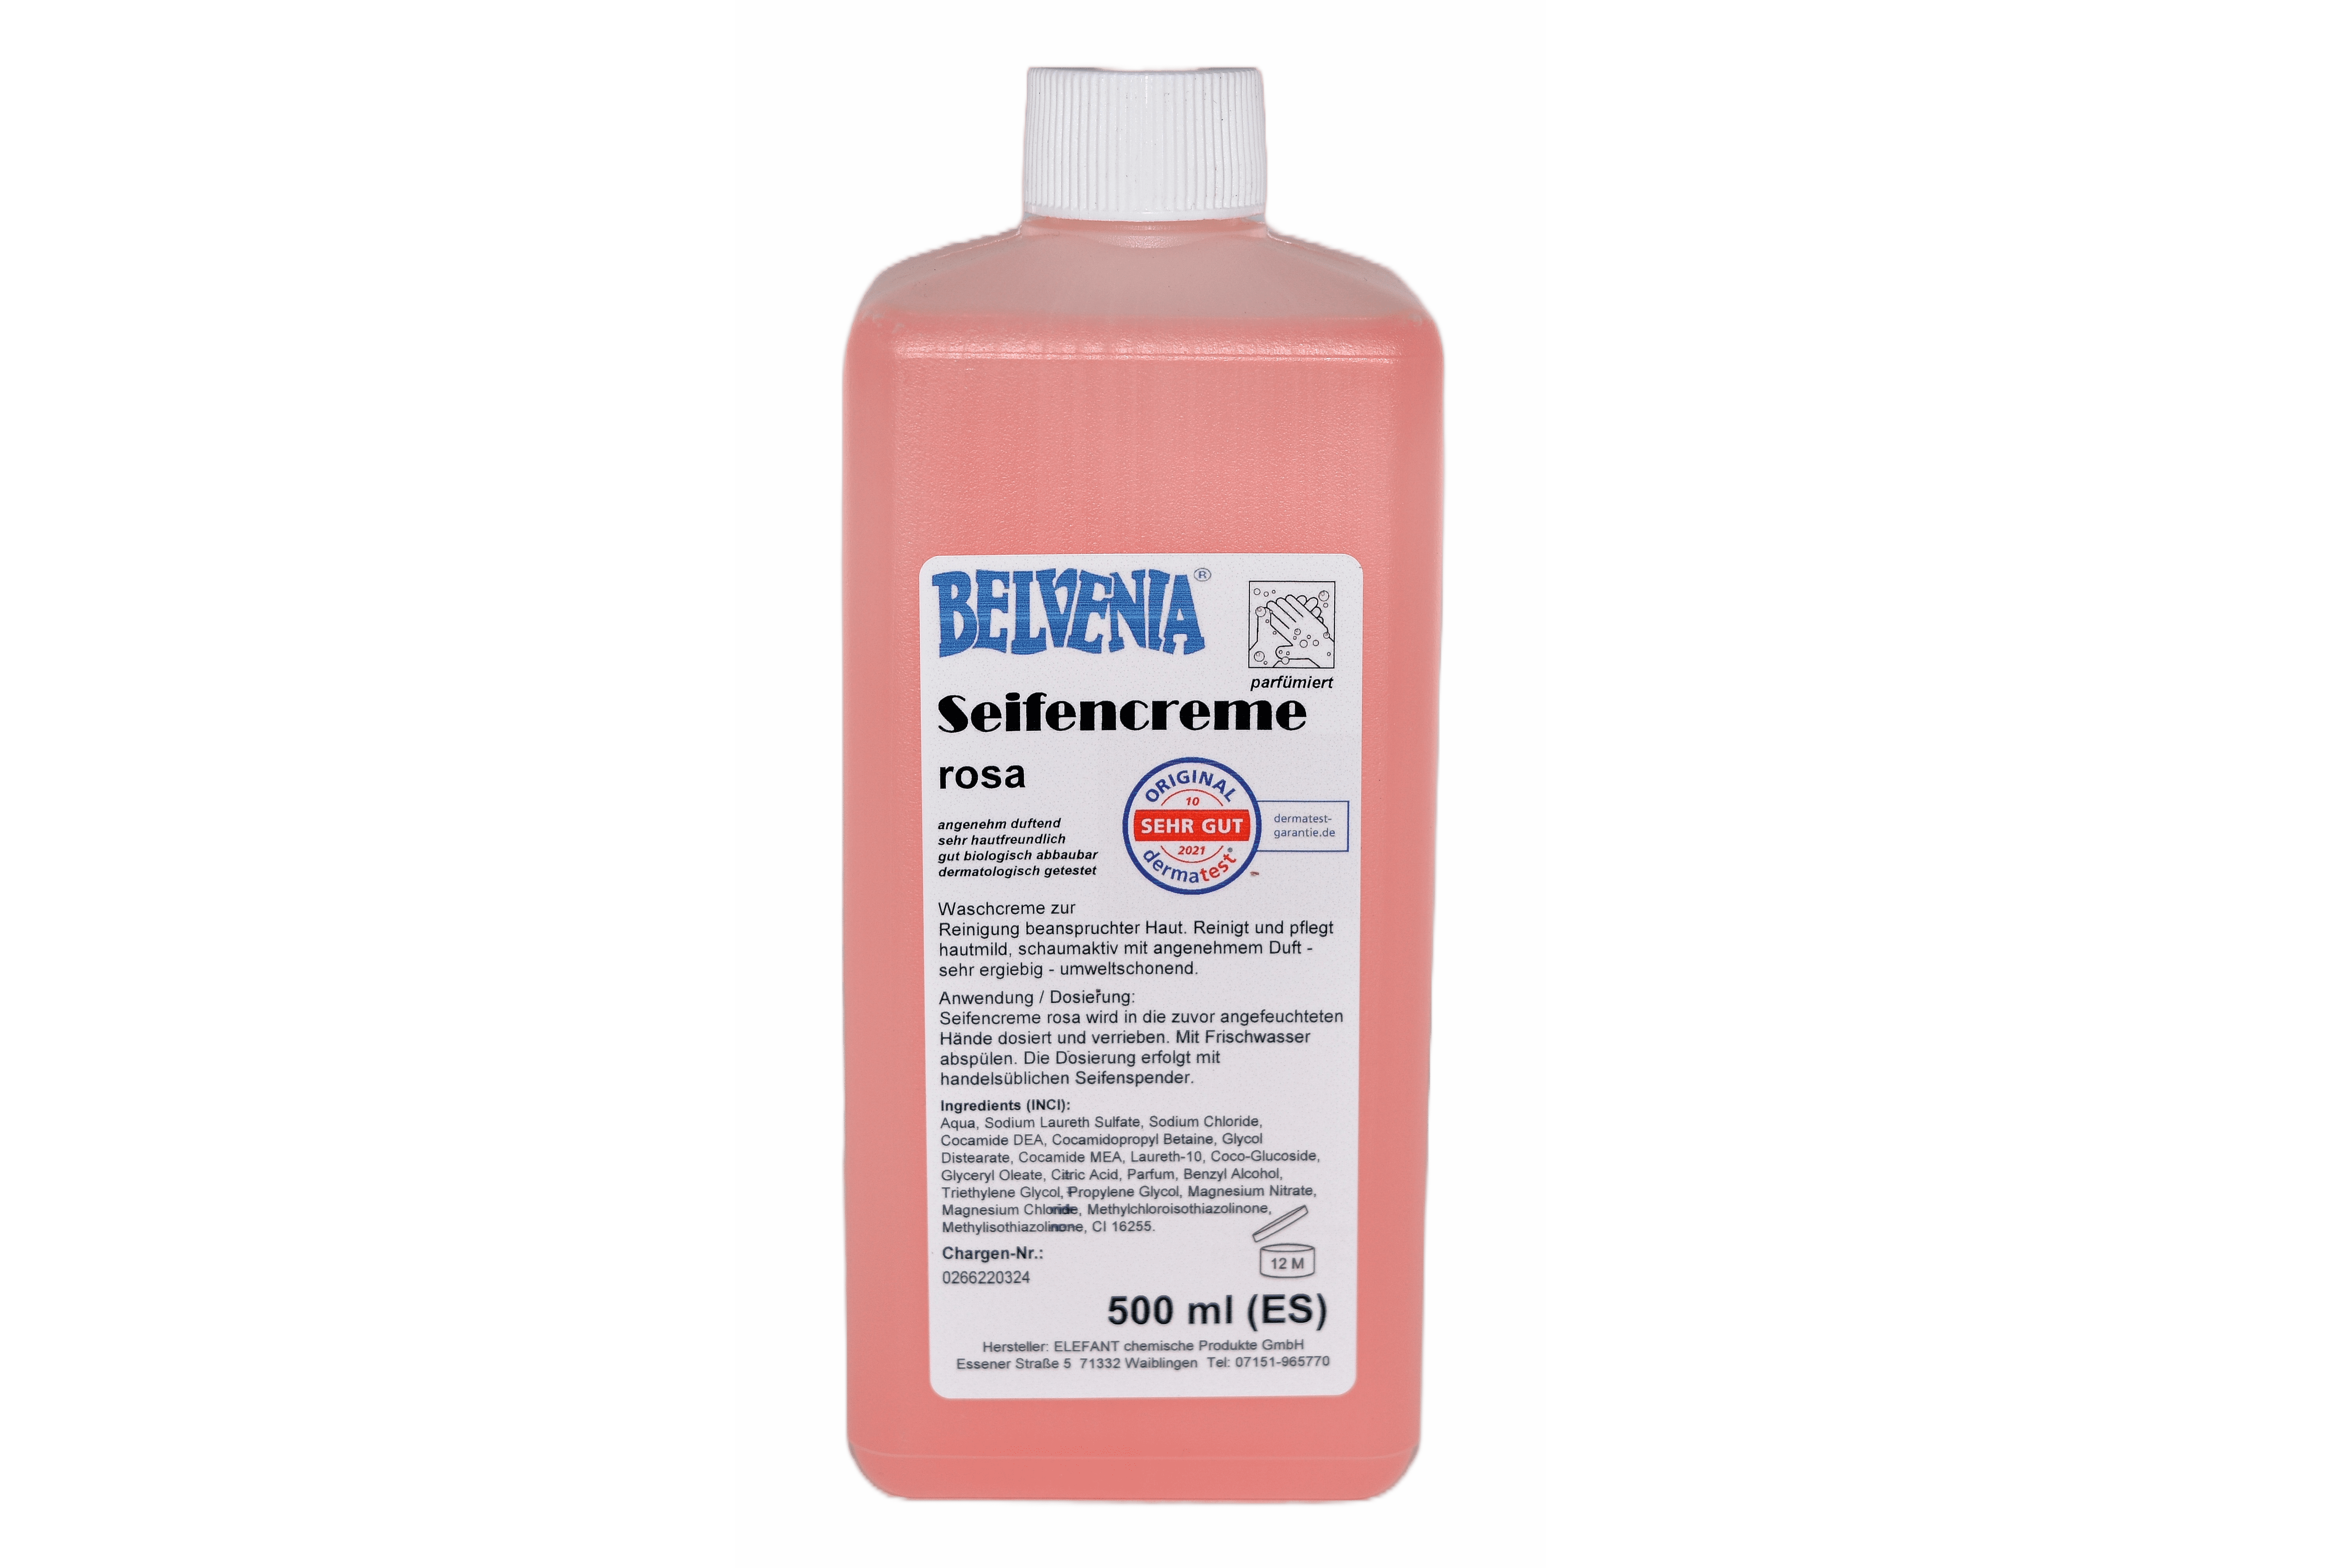 BELVENIA-Cremeseife rosa 500 ml Spenderflasche (ES) Karton mit 12x500 ml